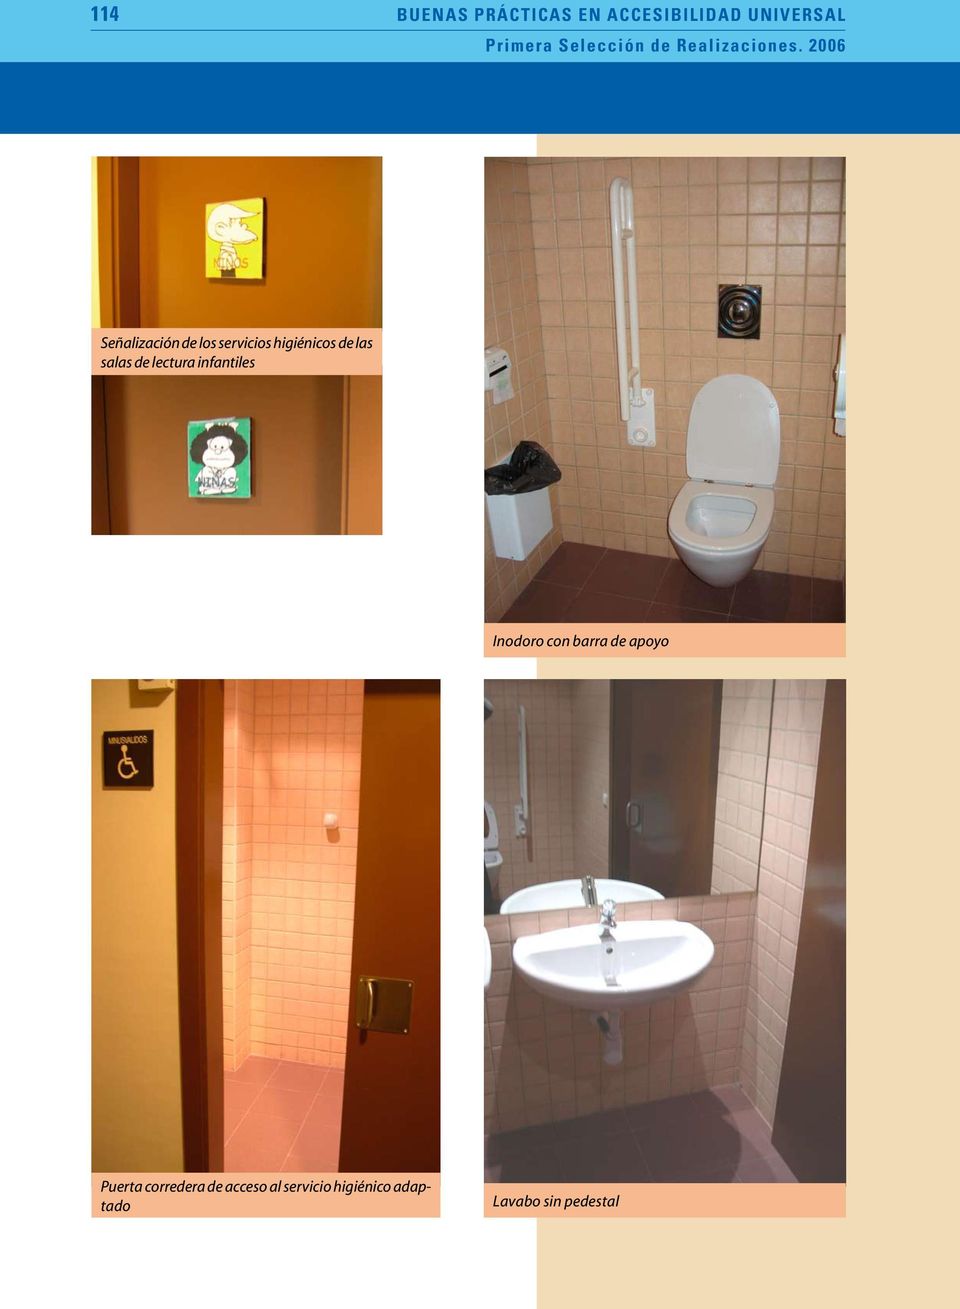 2006 Señalización de los servicios higiénicos de las salas de